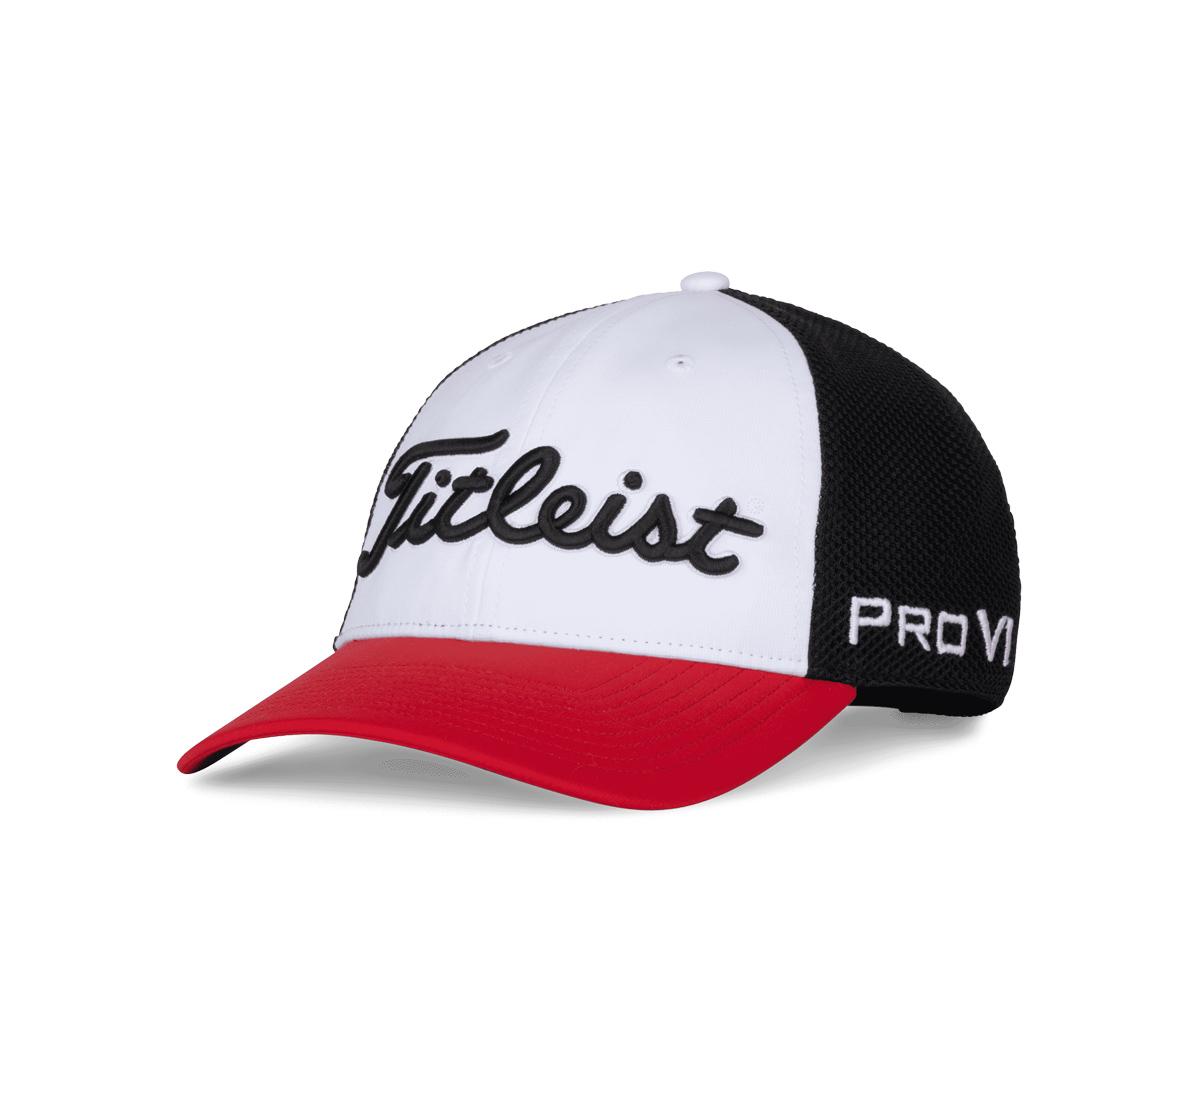 Tour Performance Mesh Hat | Titleist Golf Hats | Titleist